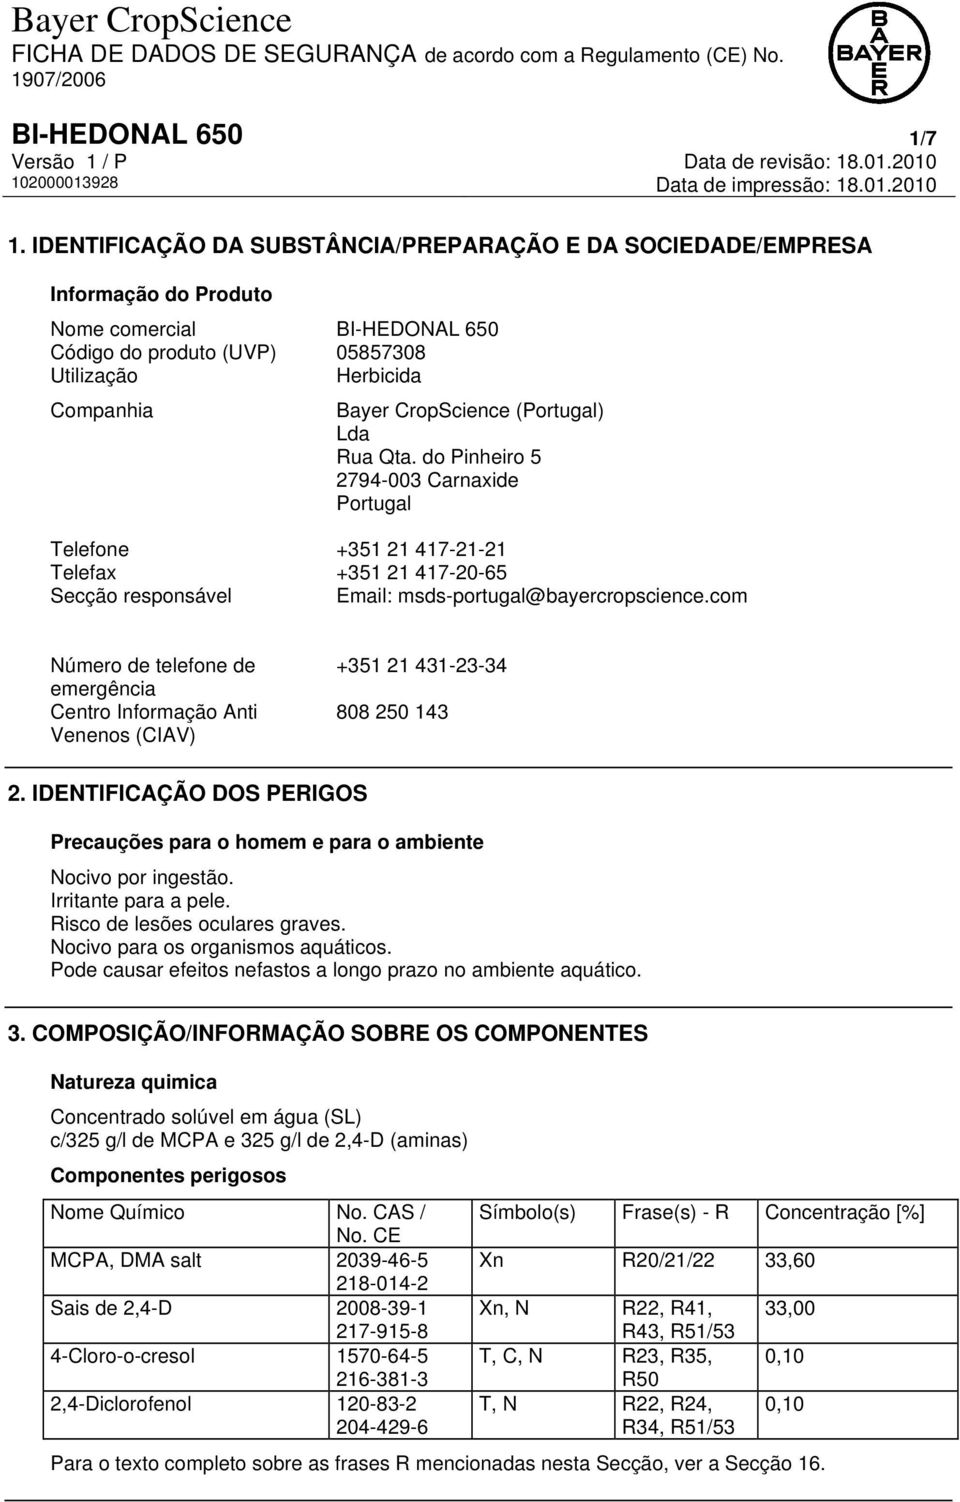 (Portugal) Lda Rua Qta. do Pinheiro 5 2794-003 Carnaxide Portugal Telefone +351 21 417-21-21 Telefax +351 21 417-20-65 Secção responsável Email: msds-portugal@bayercropscience.